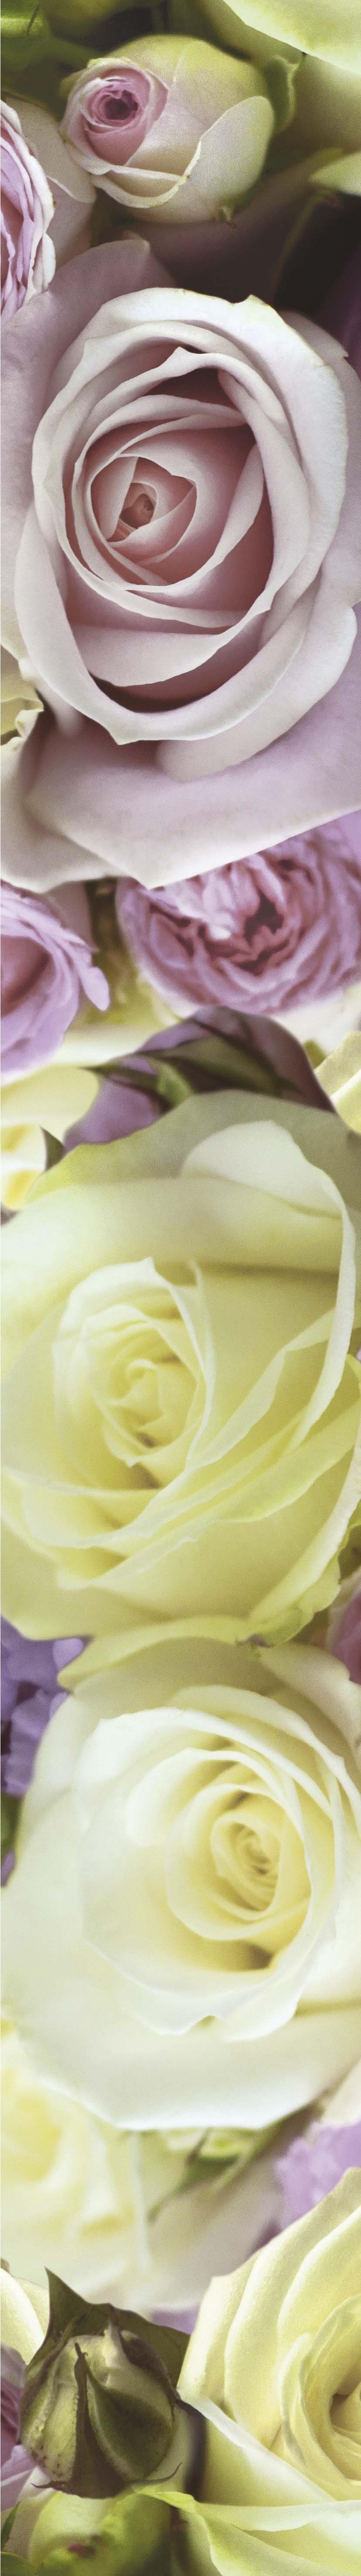 роза бордюр роуз дельбар Бордюр Роза 7х50